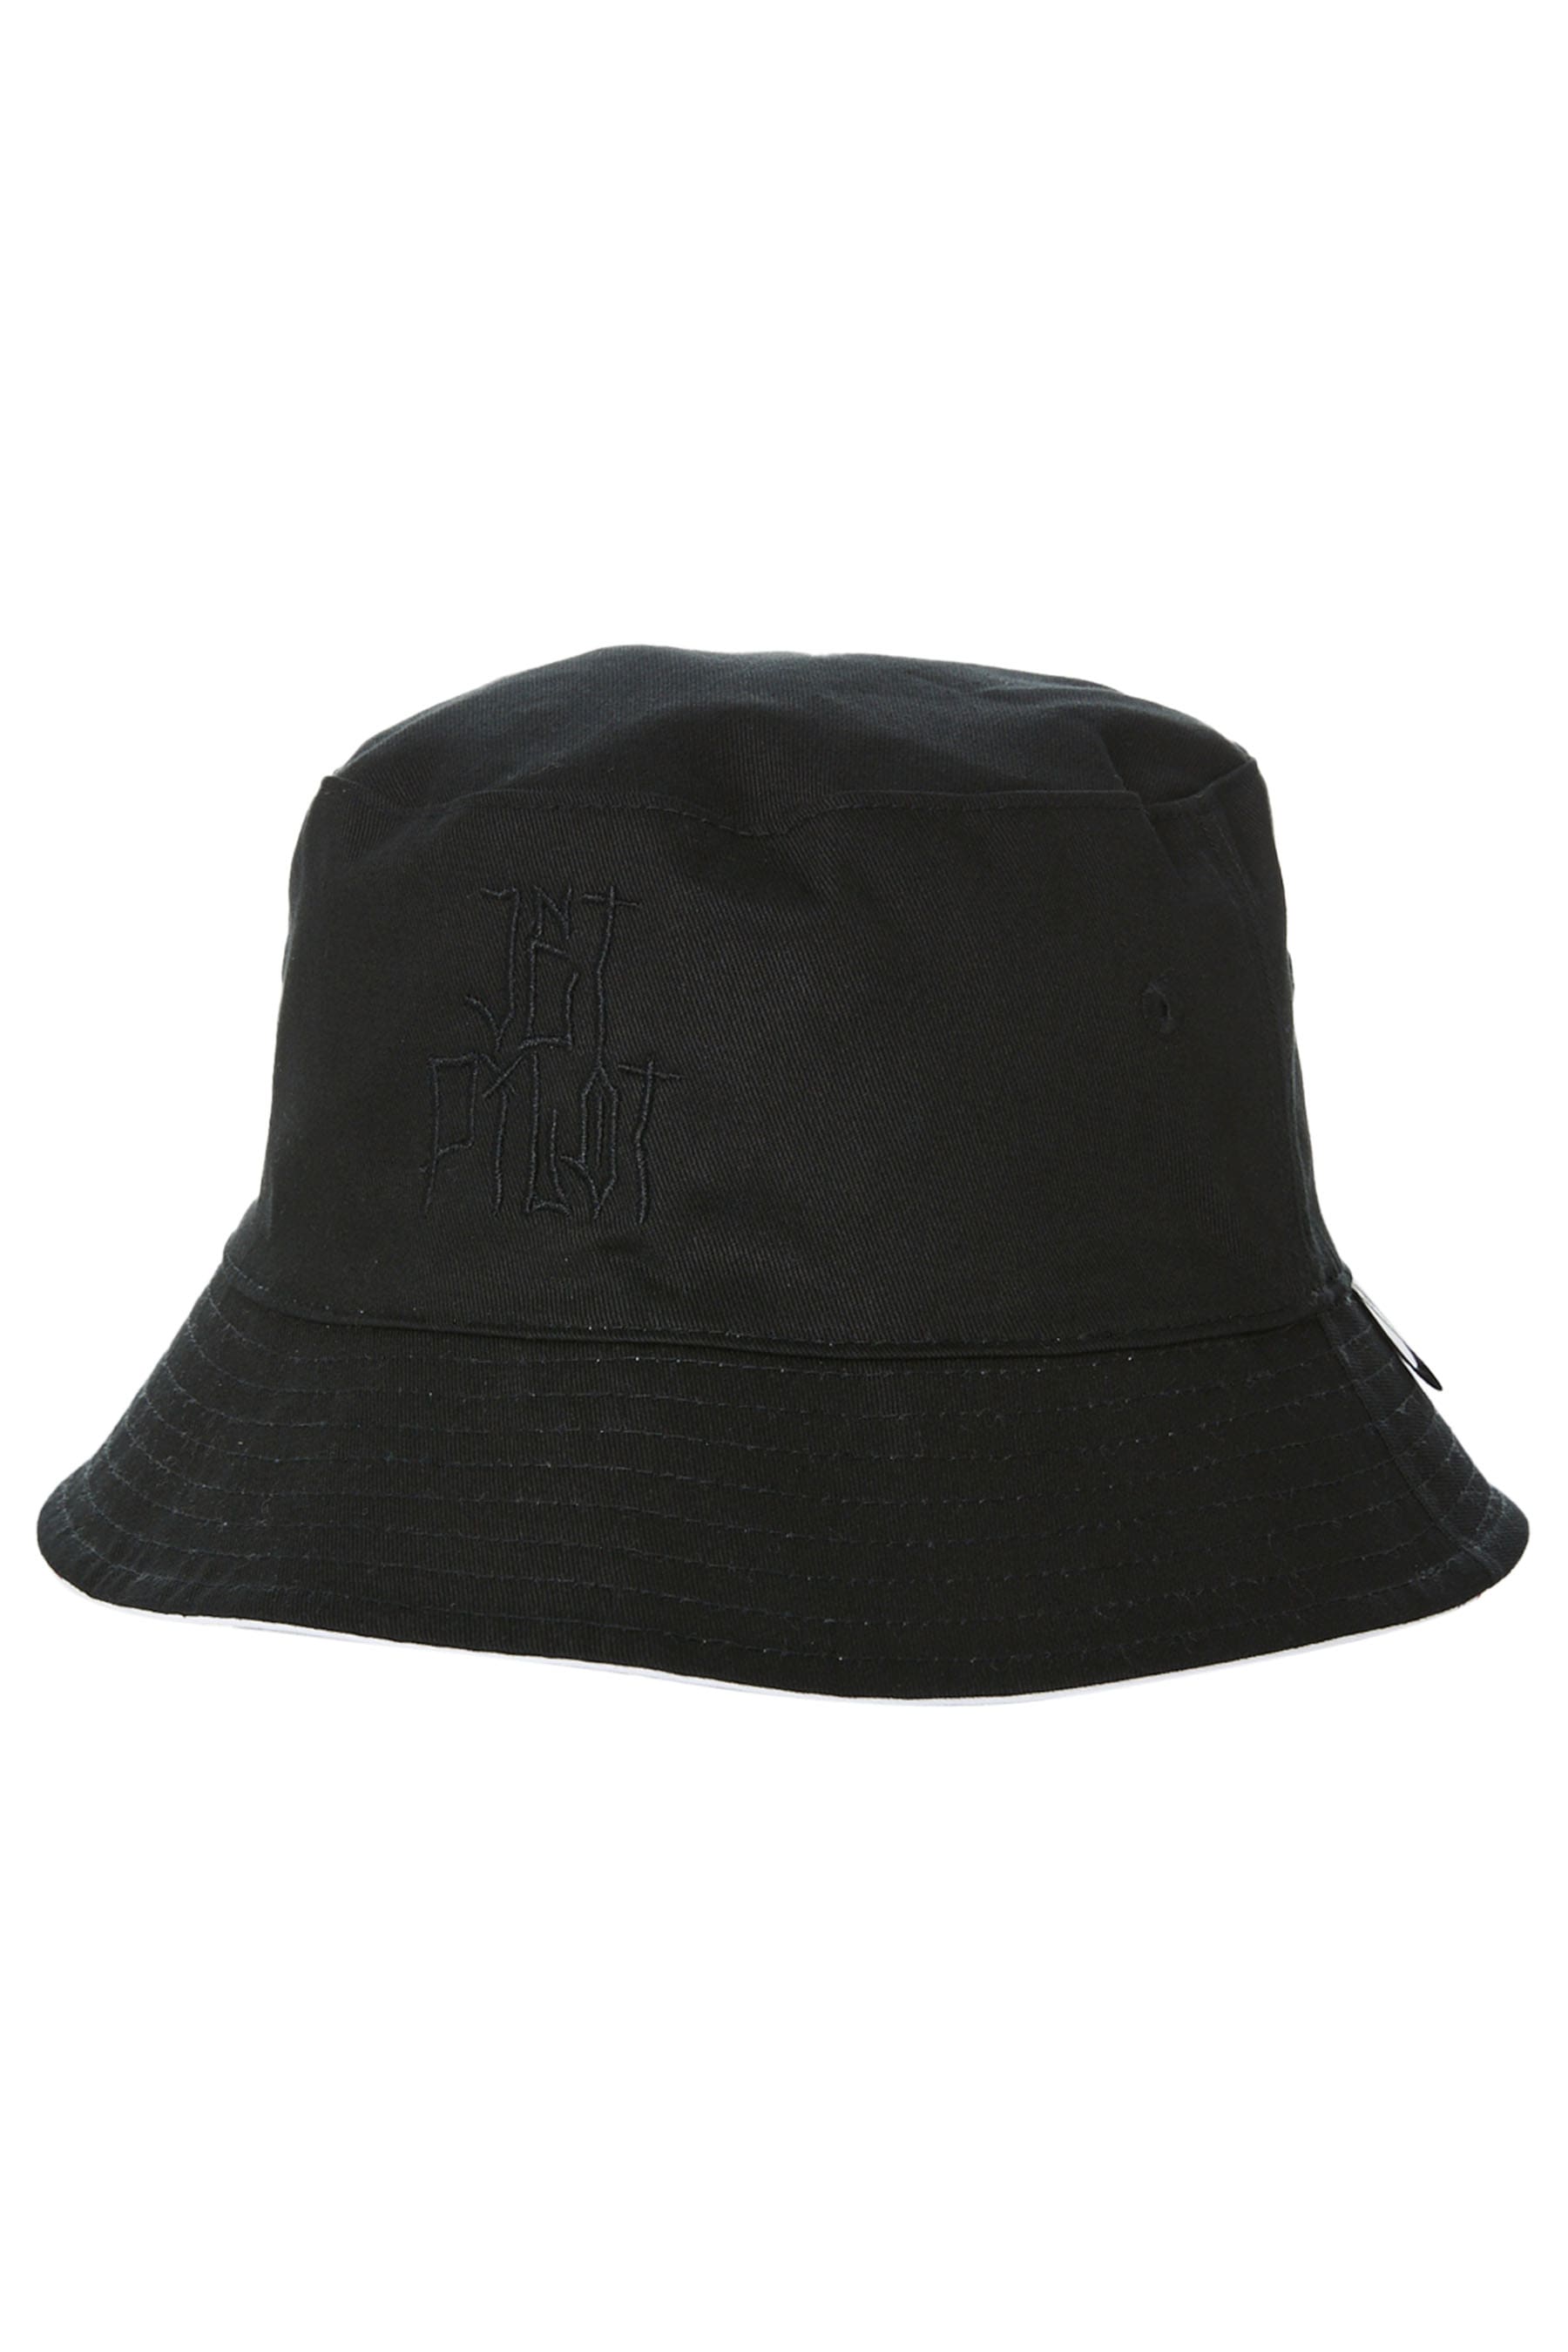 Full Send Revo Mens Bucket Hat - Black Black